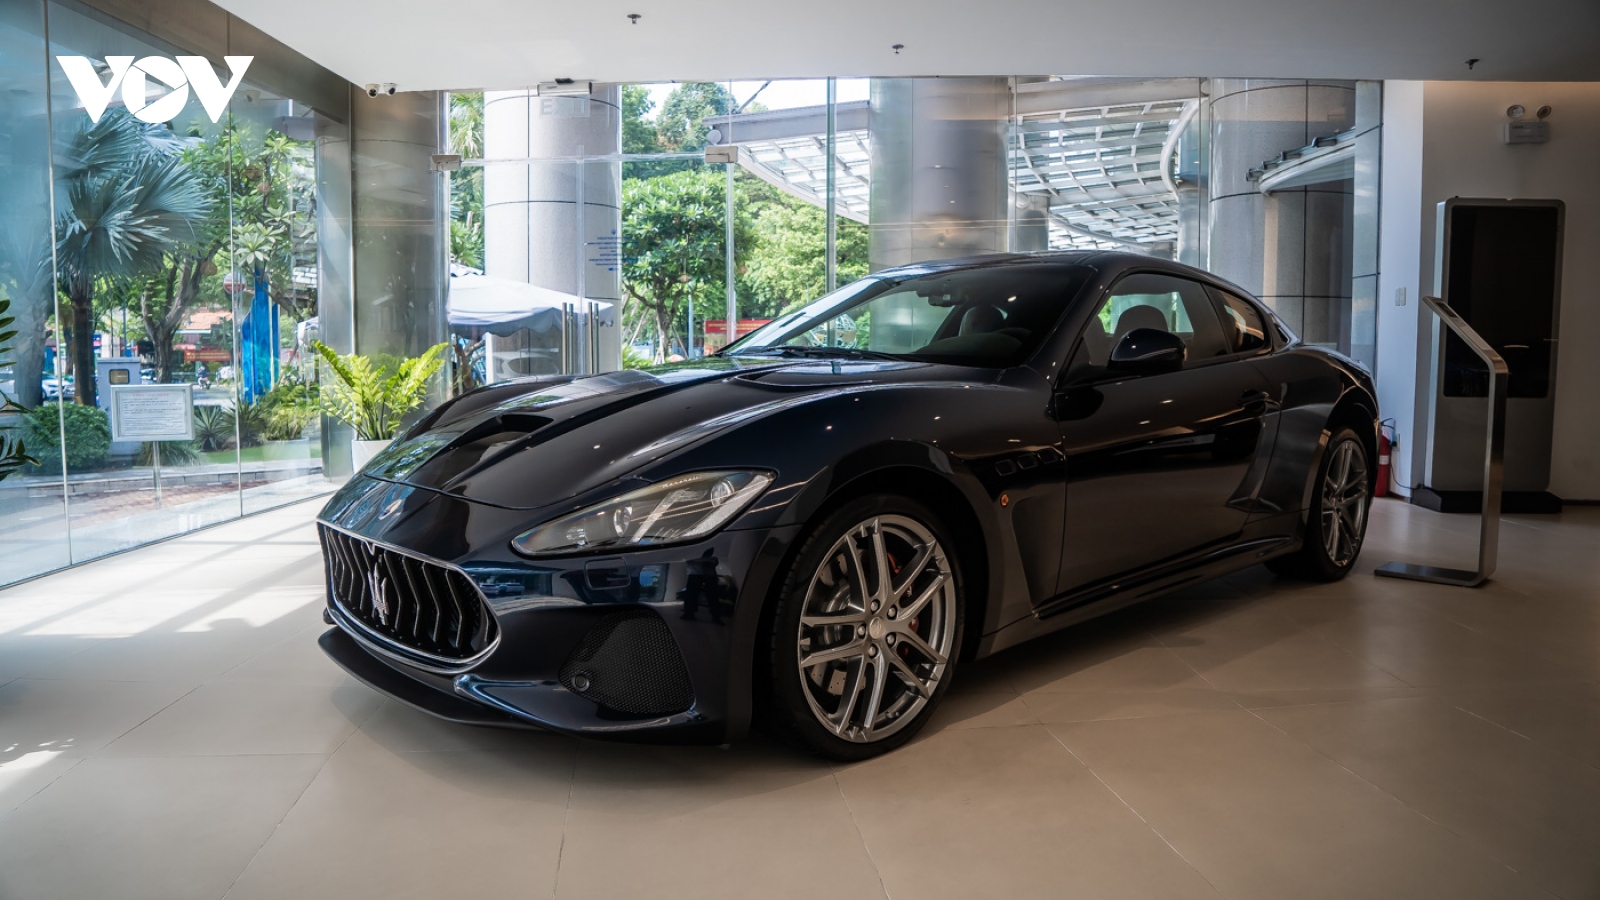 Cận cảnh Maserati GranTurismo bản nâng cấp giá gần 14 tỷ đồng tại Việt Nam